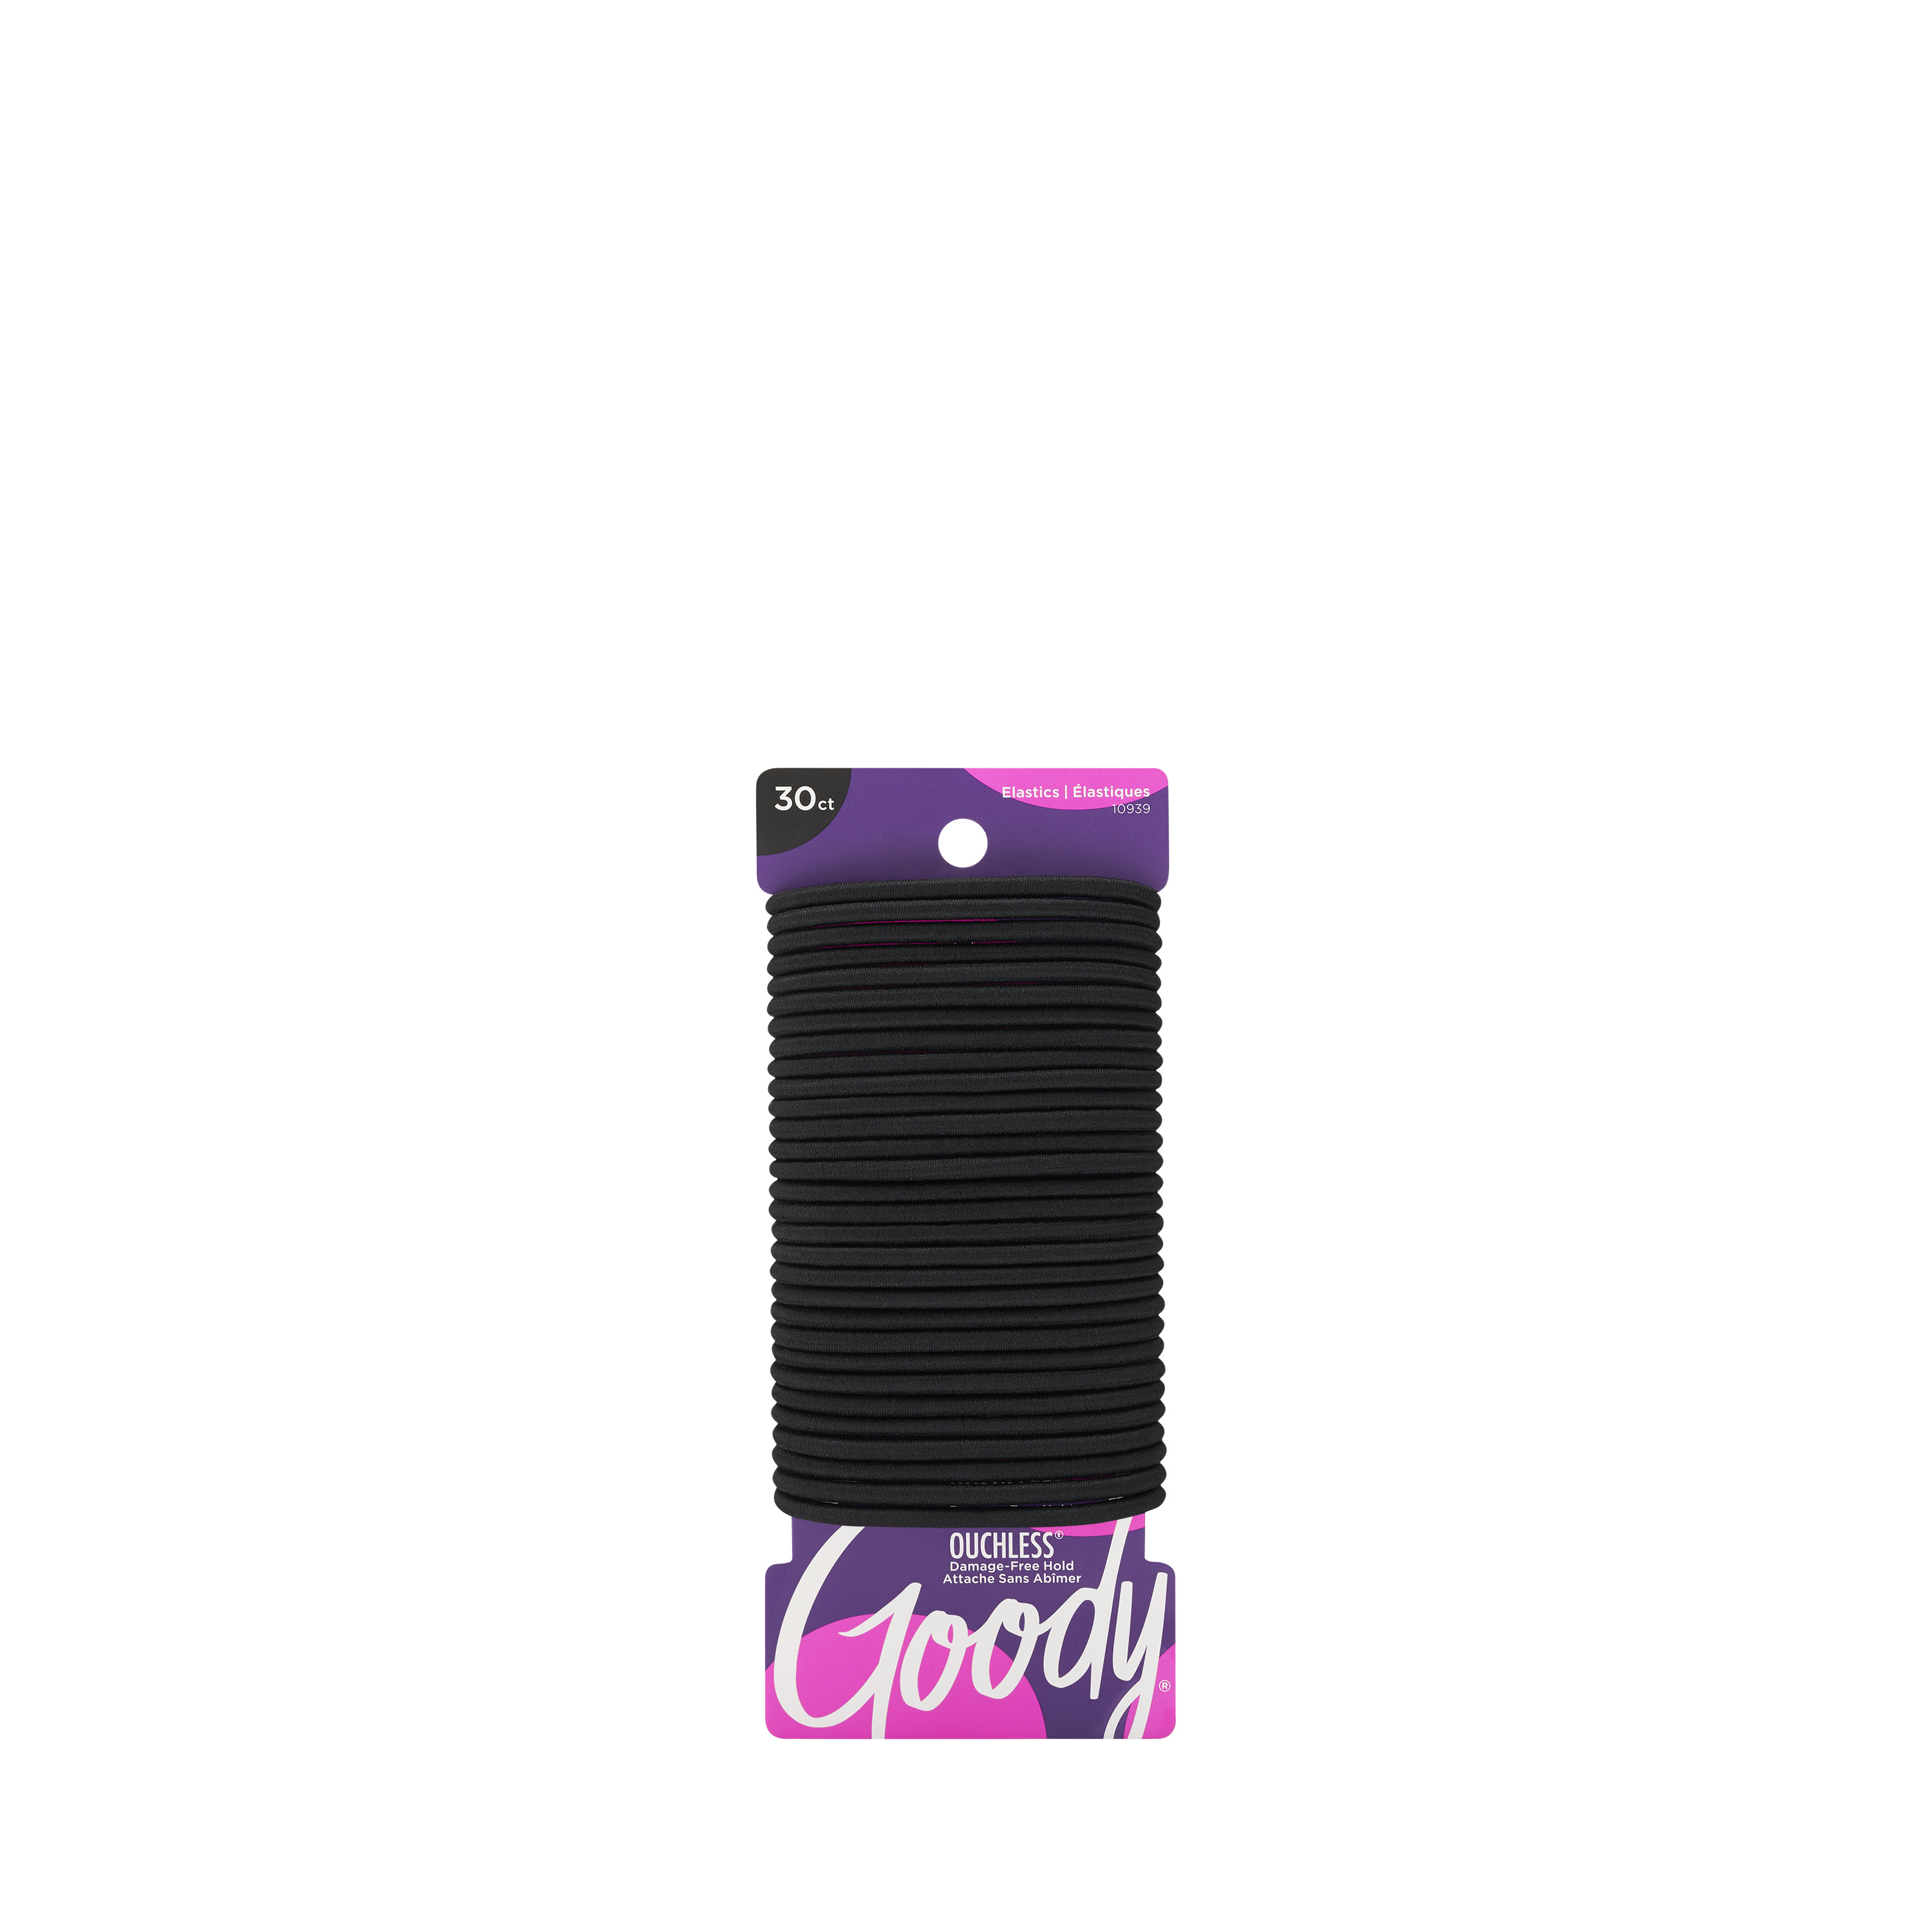 Goody Ouchless® Black Hair Elastics, No Metal Gentle Hair Ties, 30 Ct - image 1 of 5